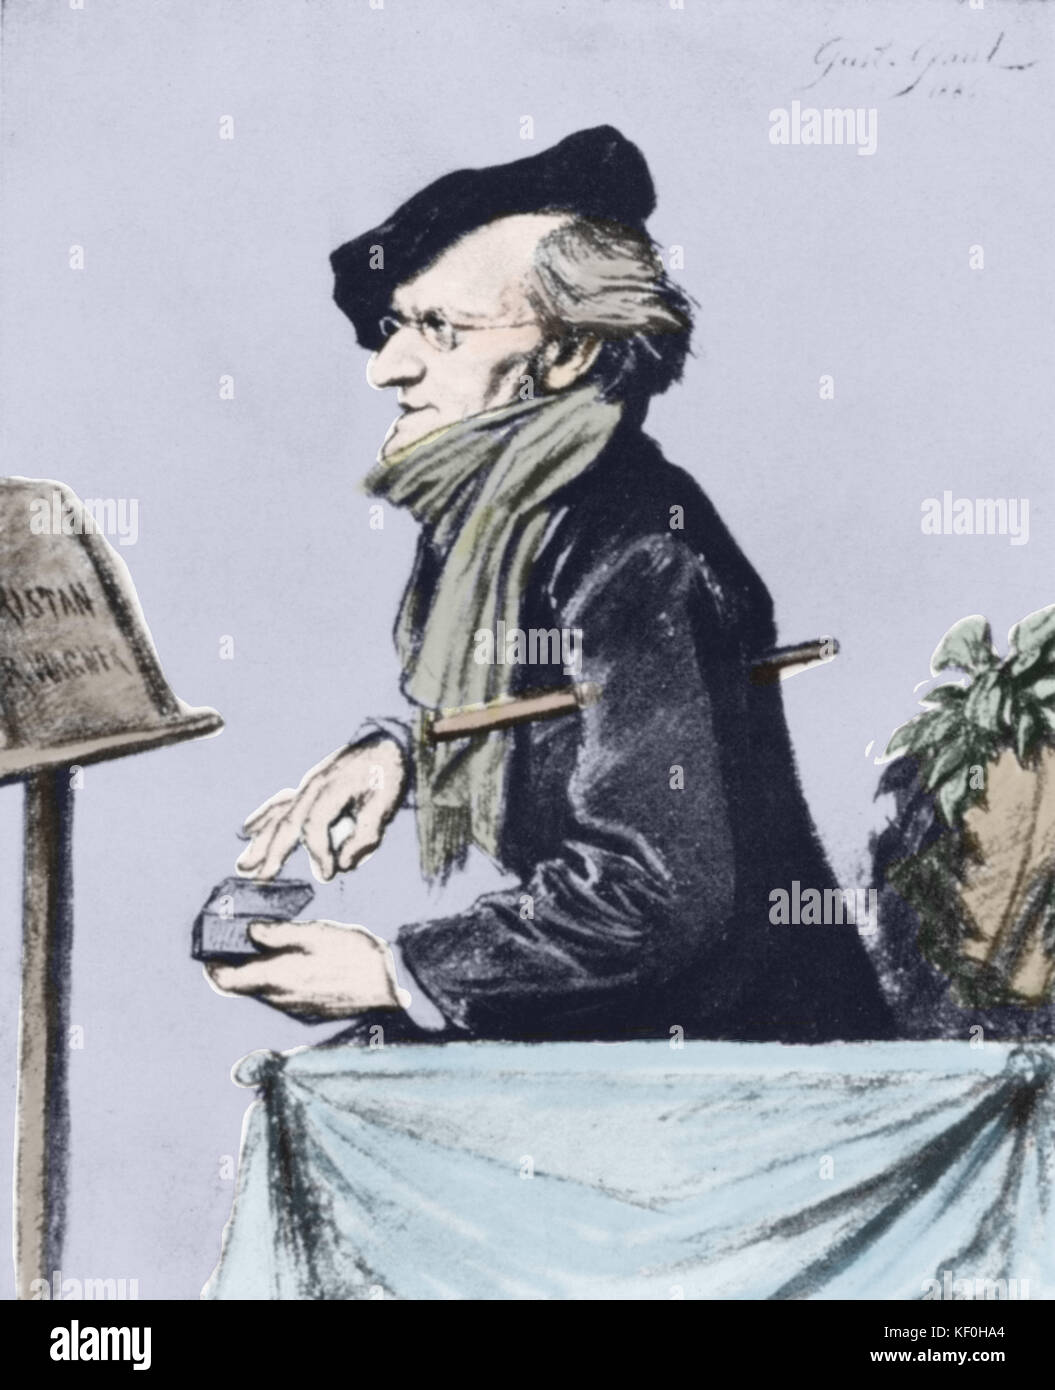 Richard Wagner ripassando "Tristano e Isotta", 1865 - caricatura di Gustav Gallia. Compositore tedesco & autore, 22 maggio 1813 - 13 febbraio 1883. Versione Colorised. Compositore tedesco & autore, 22 maggio 1813 - 13 febbraio 1883. Foto Stock